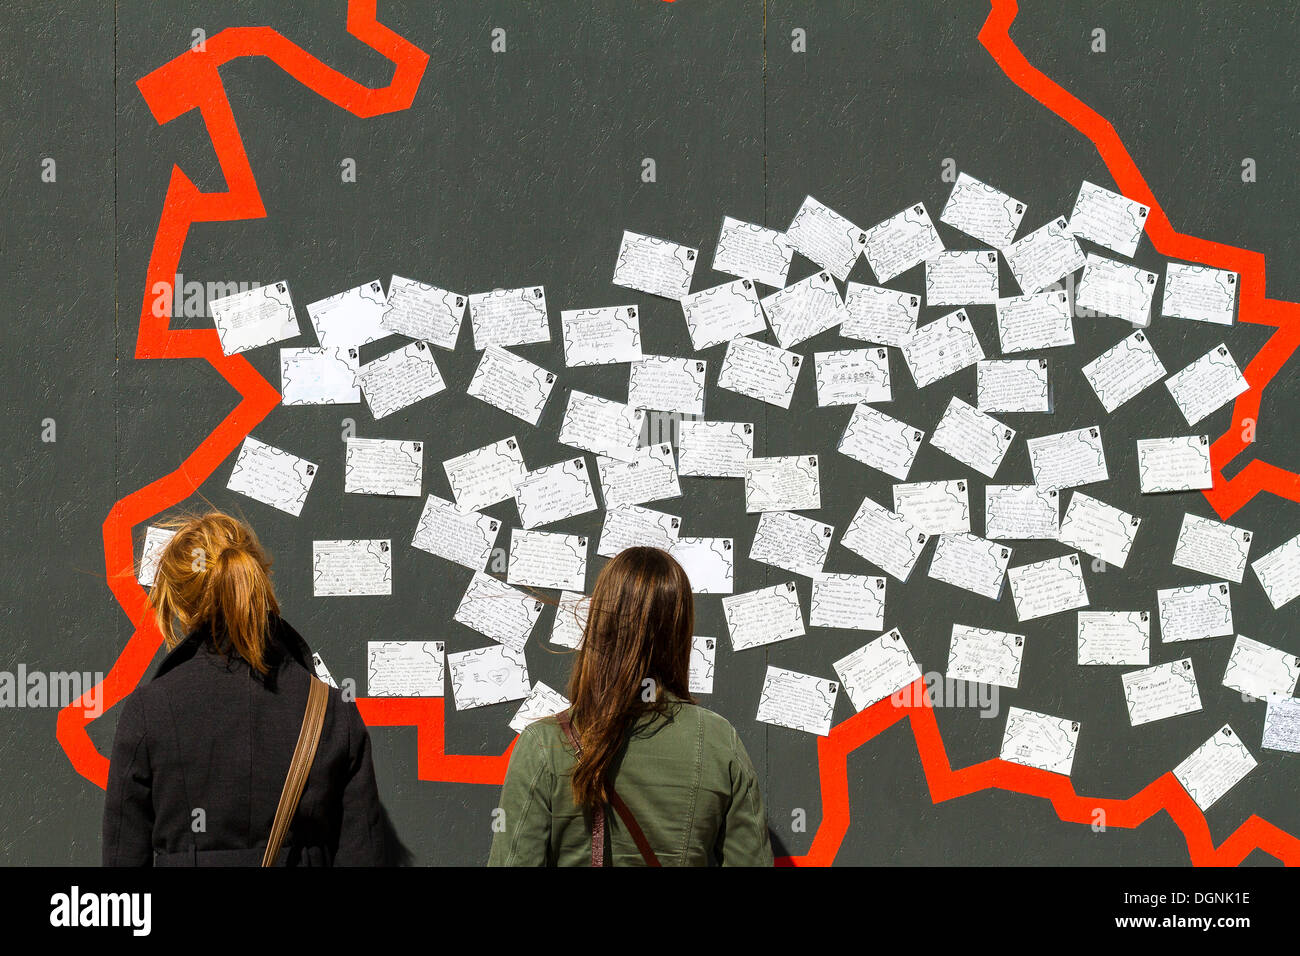 Zwei junge weibliche Touristen stehen vor einer Wand mit Postkarten, Display einrichten zum 775. Jubiläum der Stockfoto